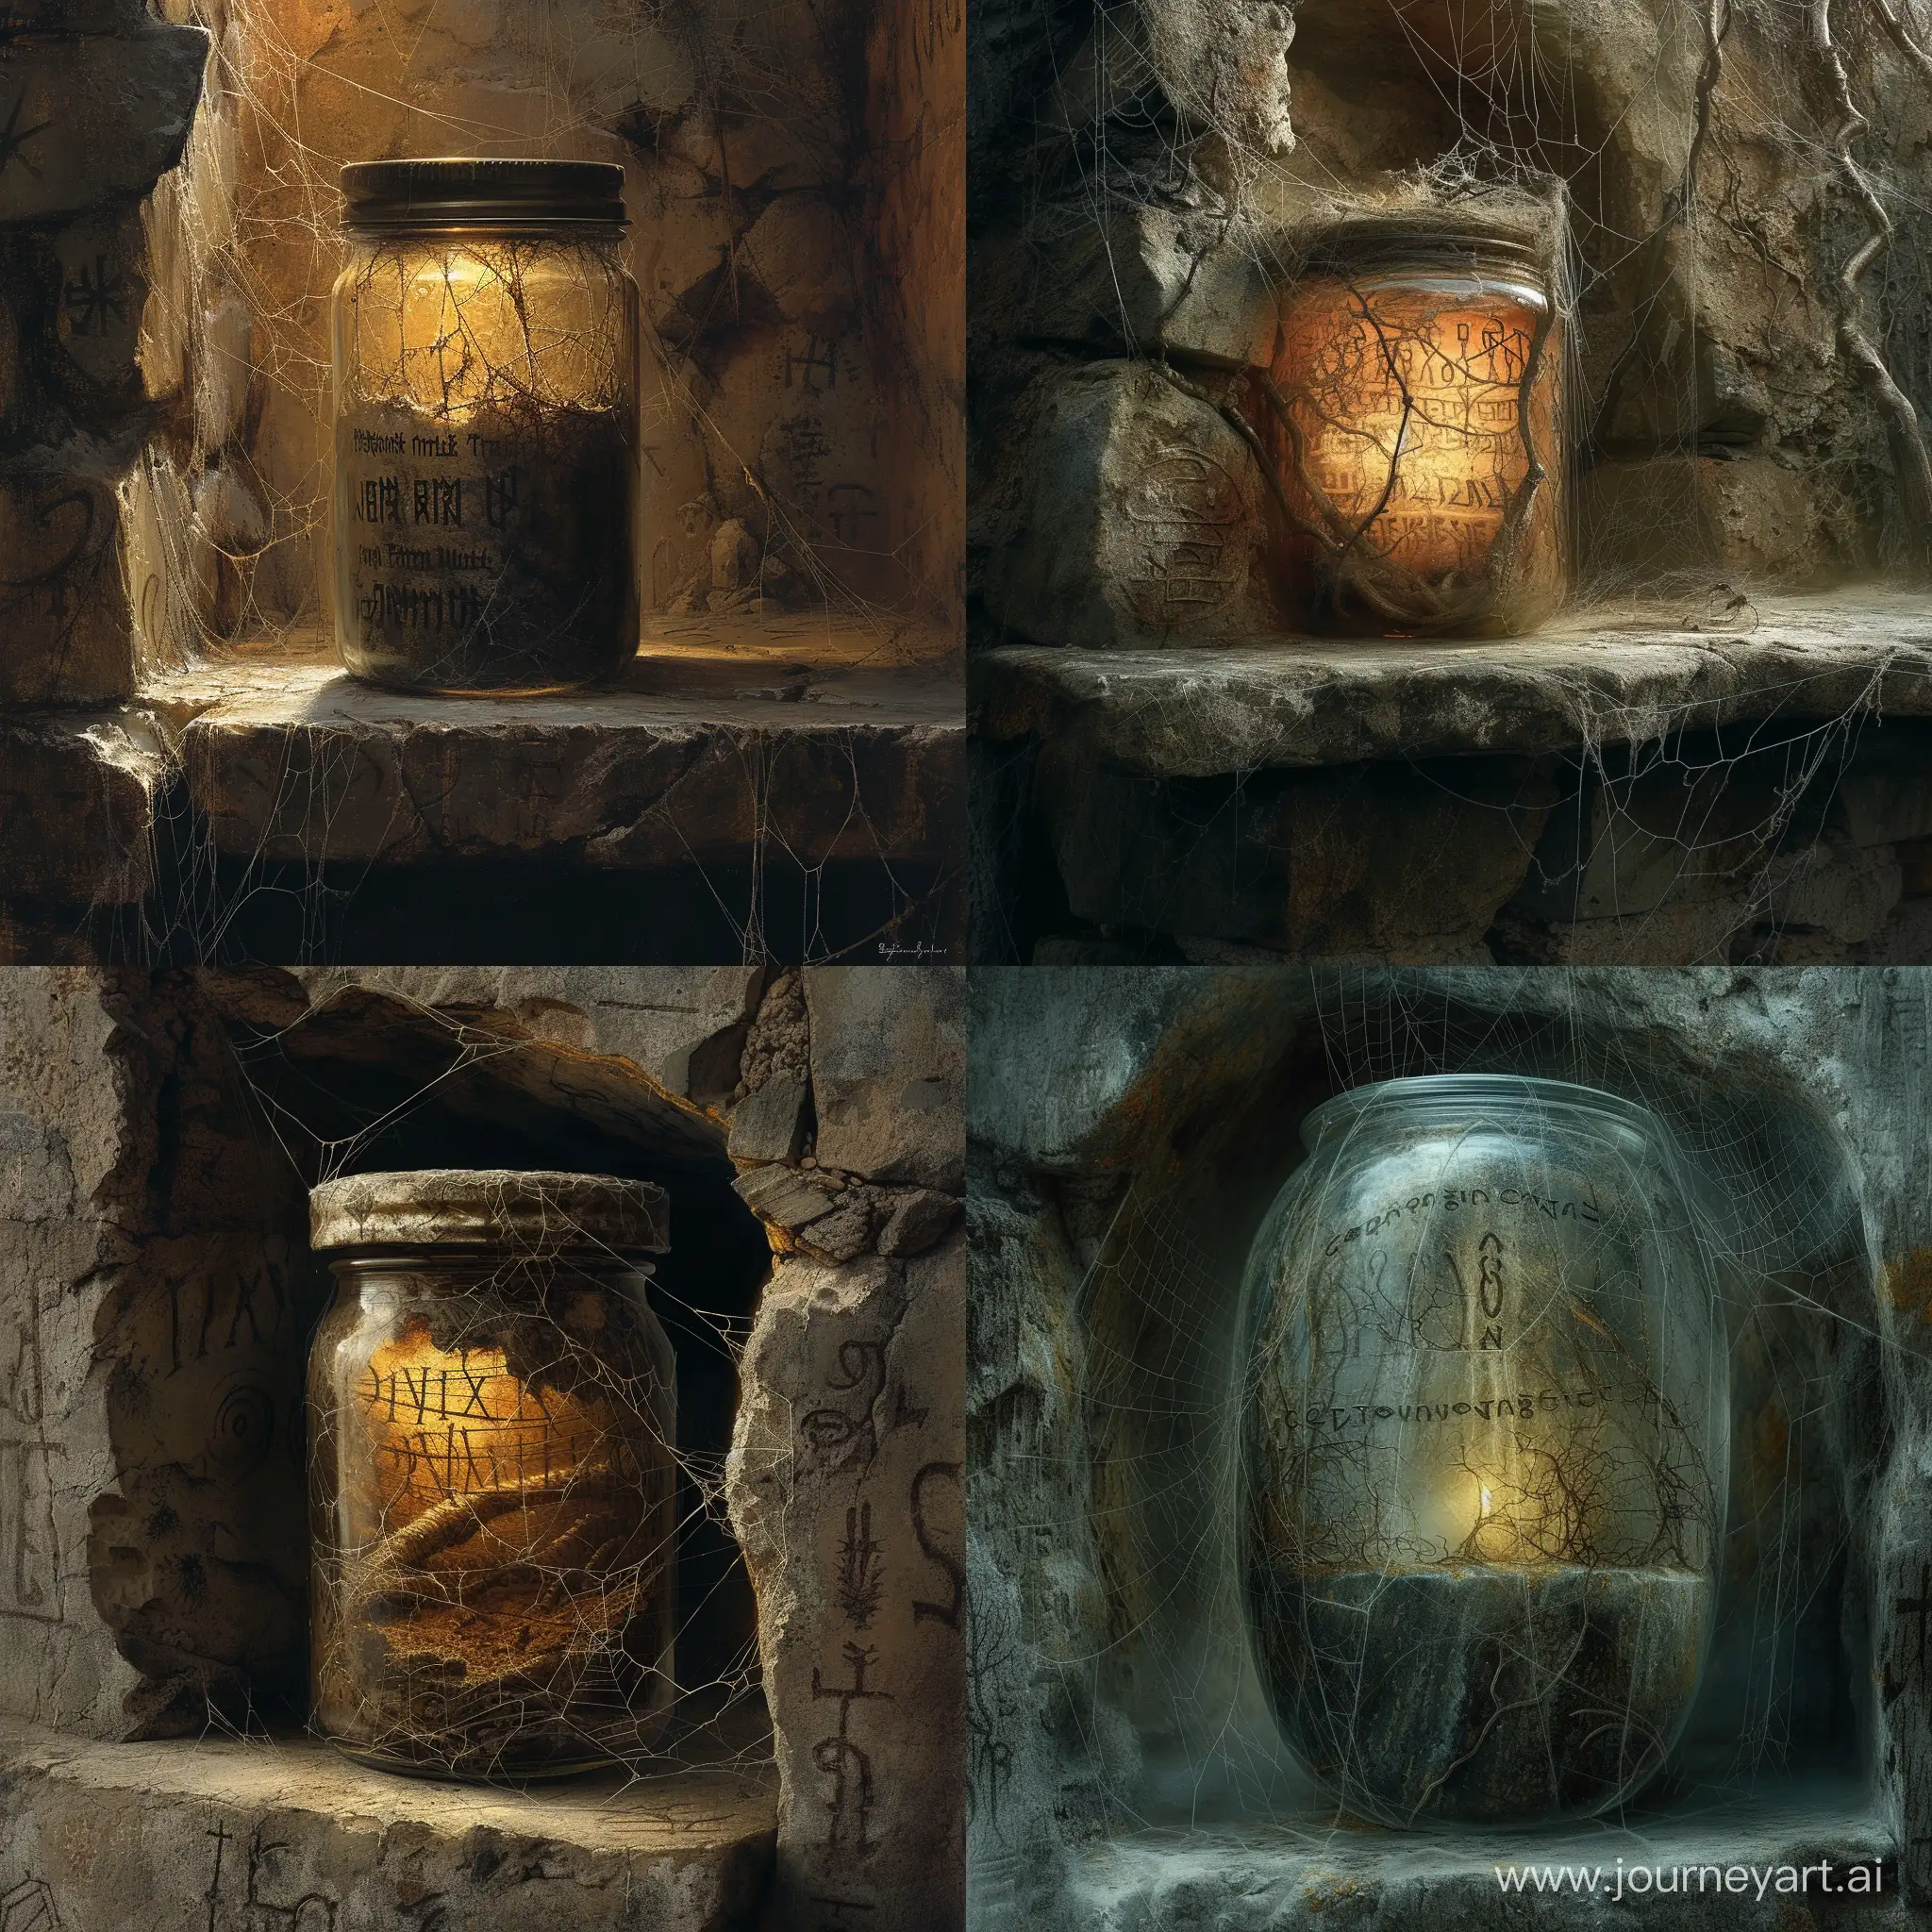 Dark-BeksinskiInspired-World-Captured-in-a-Jar-with-Ancient-Runes